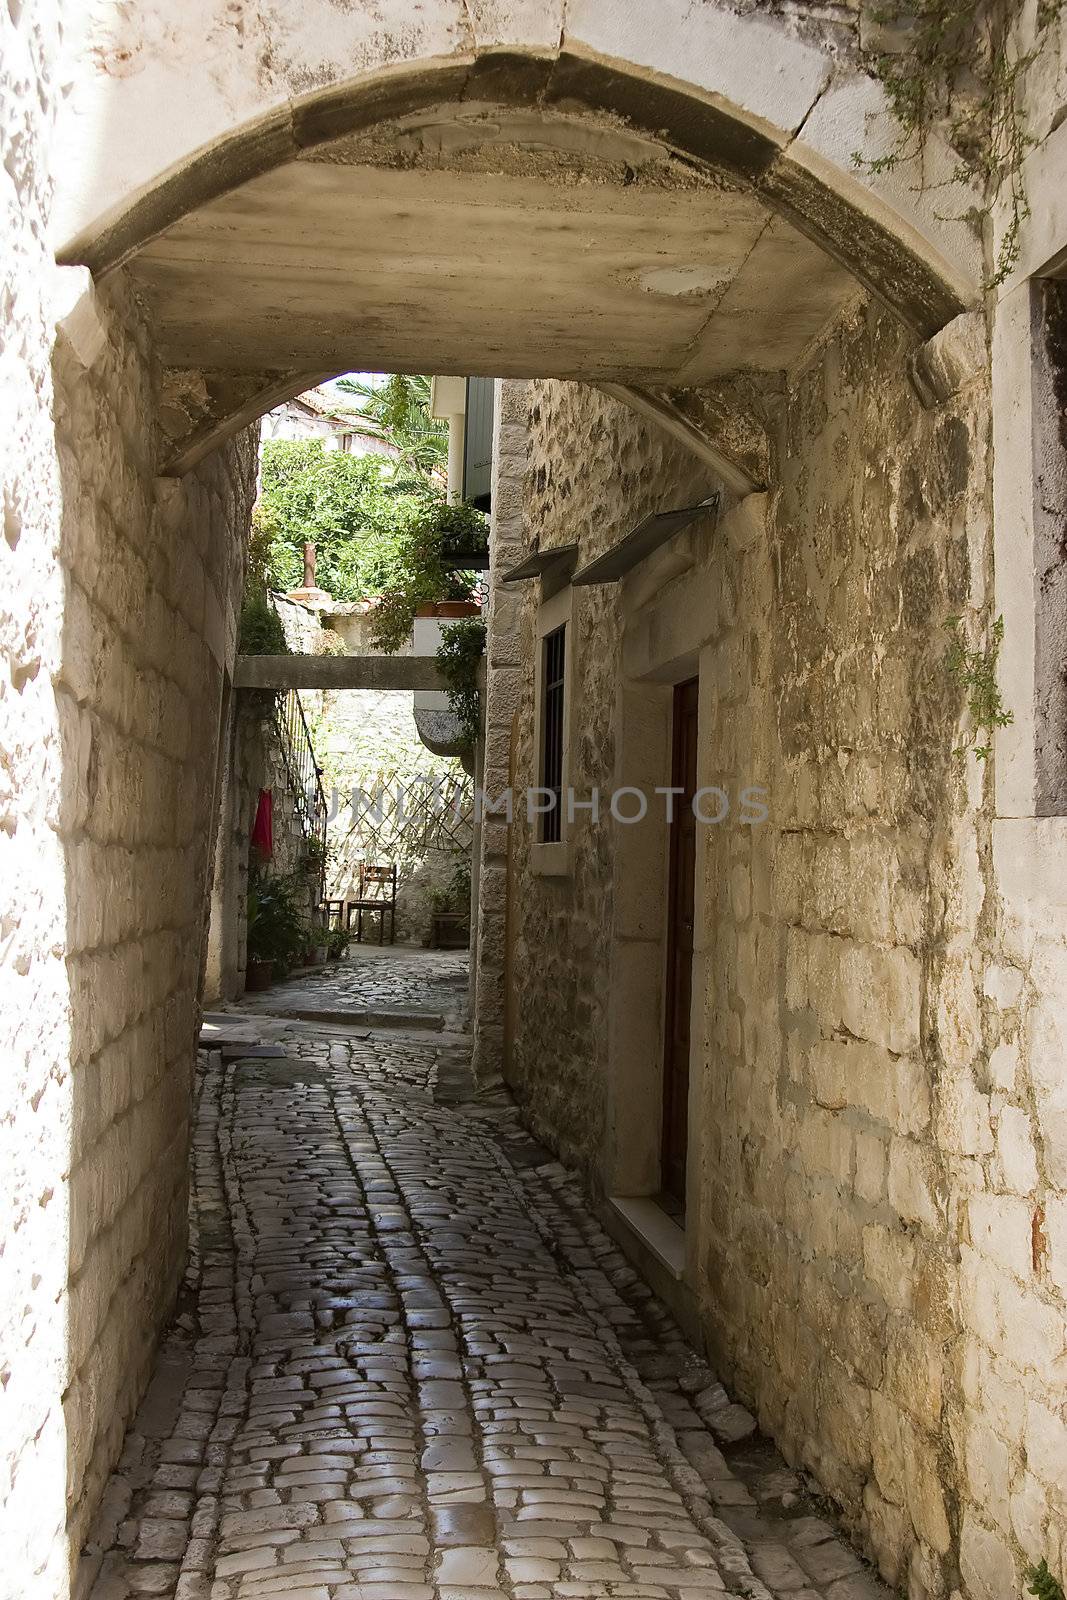 The narrow old street in Sibenik, Croatia